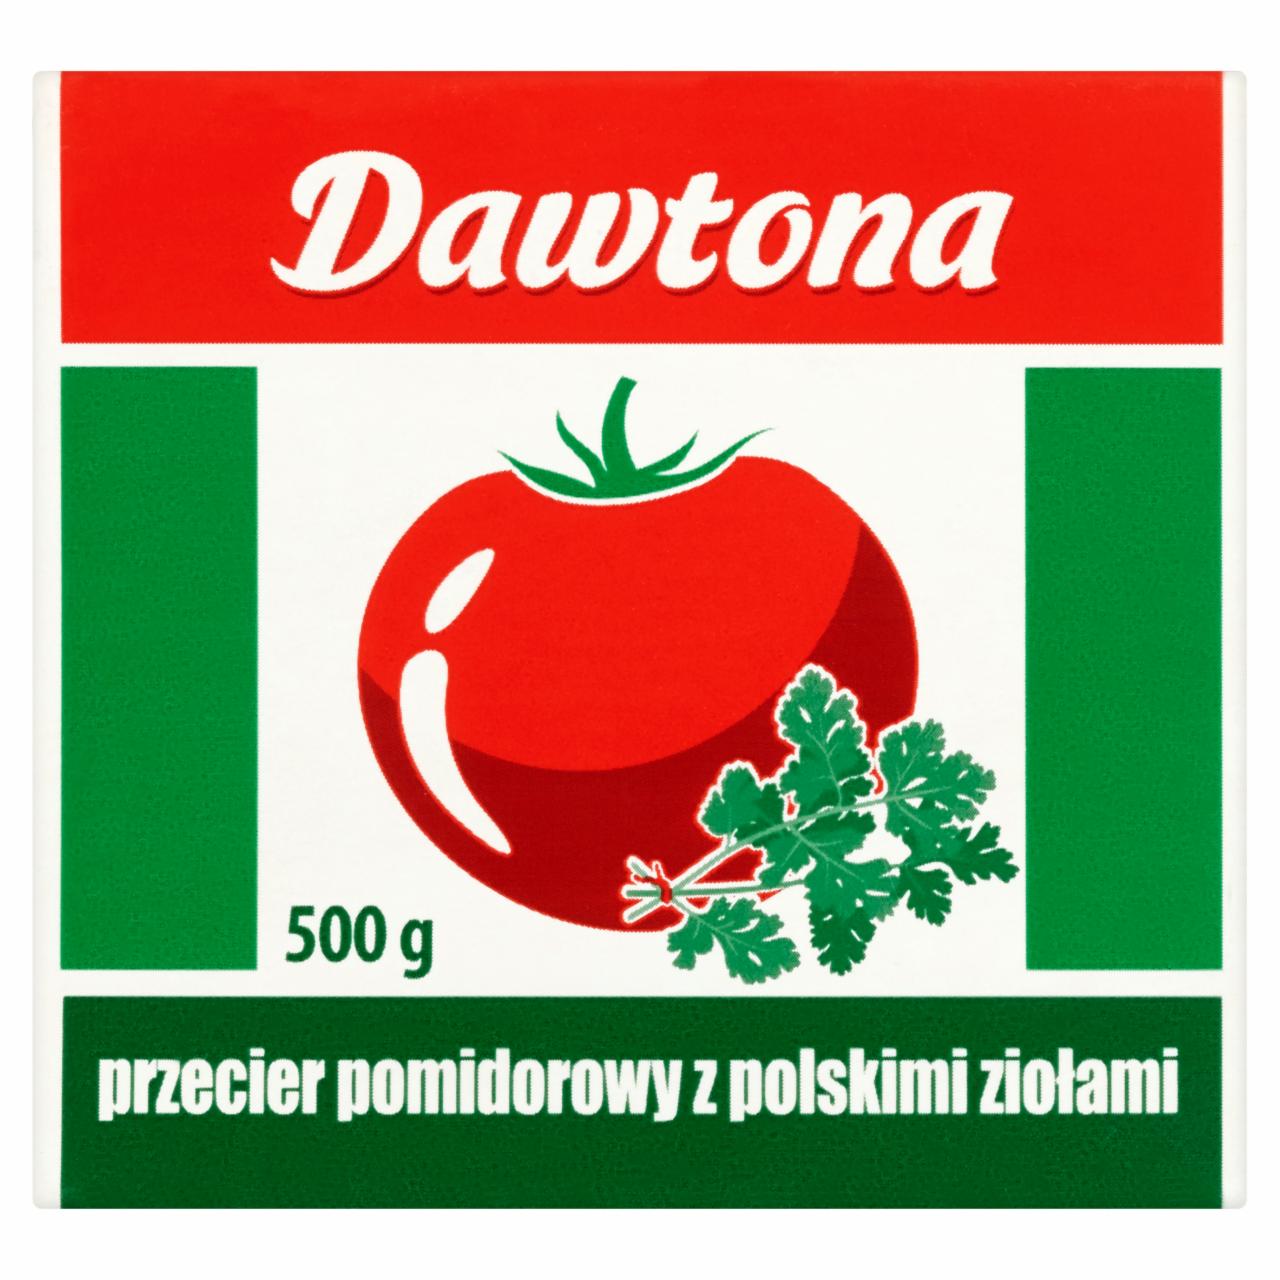 Zdjęcia - Dawtona Przecier pomidorowy z polskimi ziołami 500 g